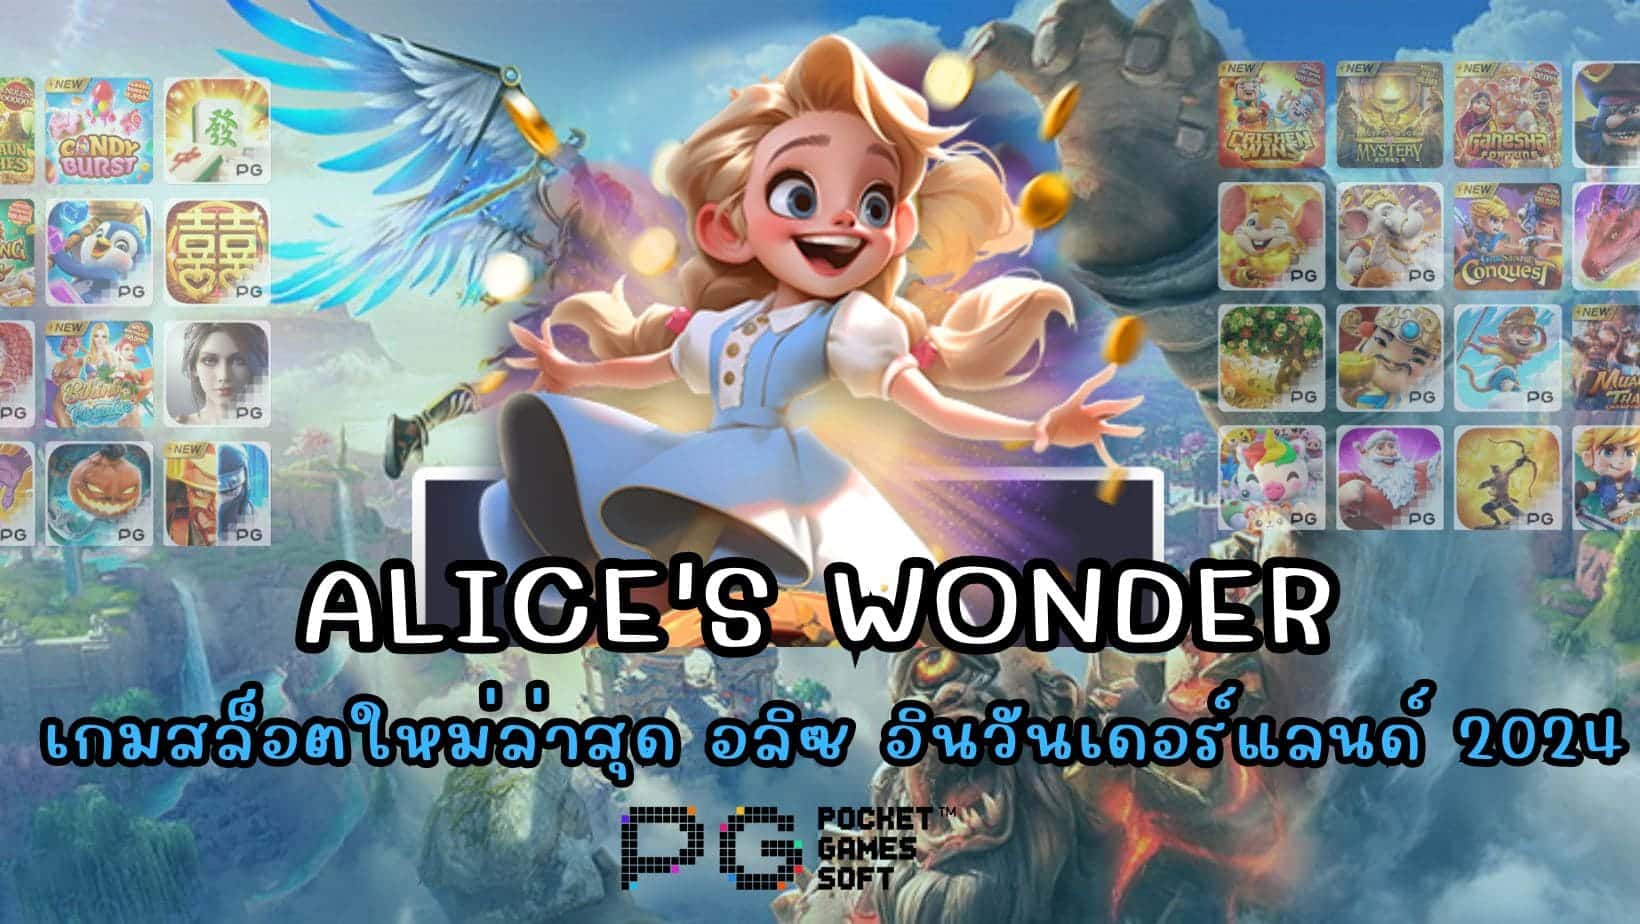 Alice's Wonder